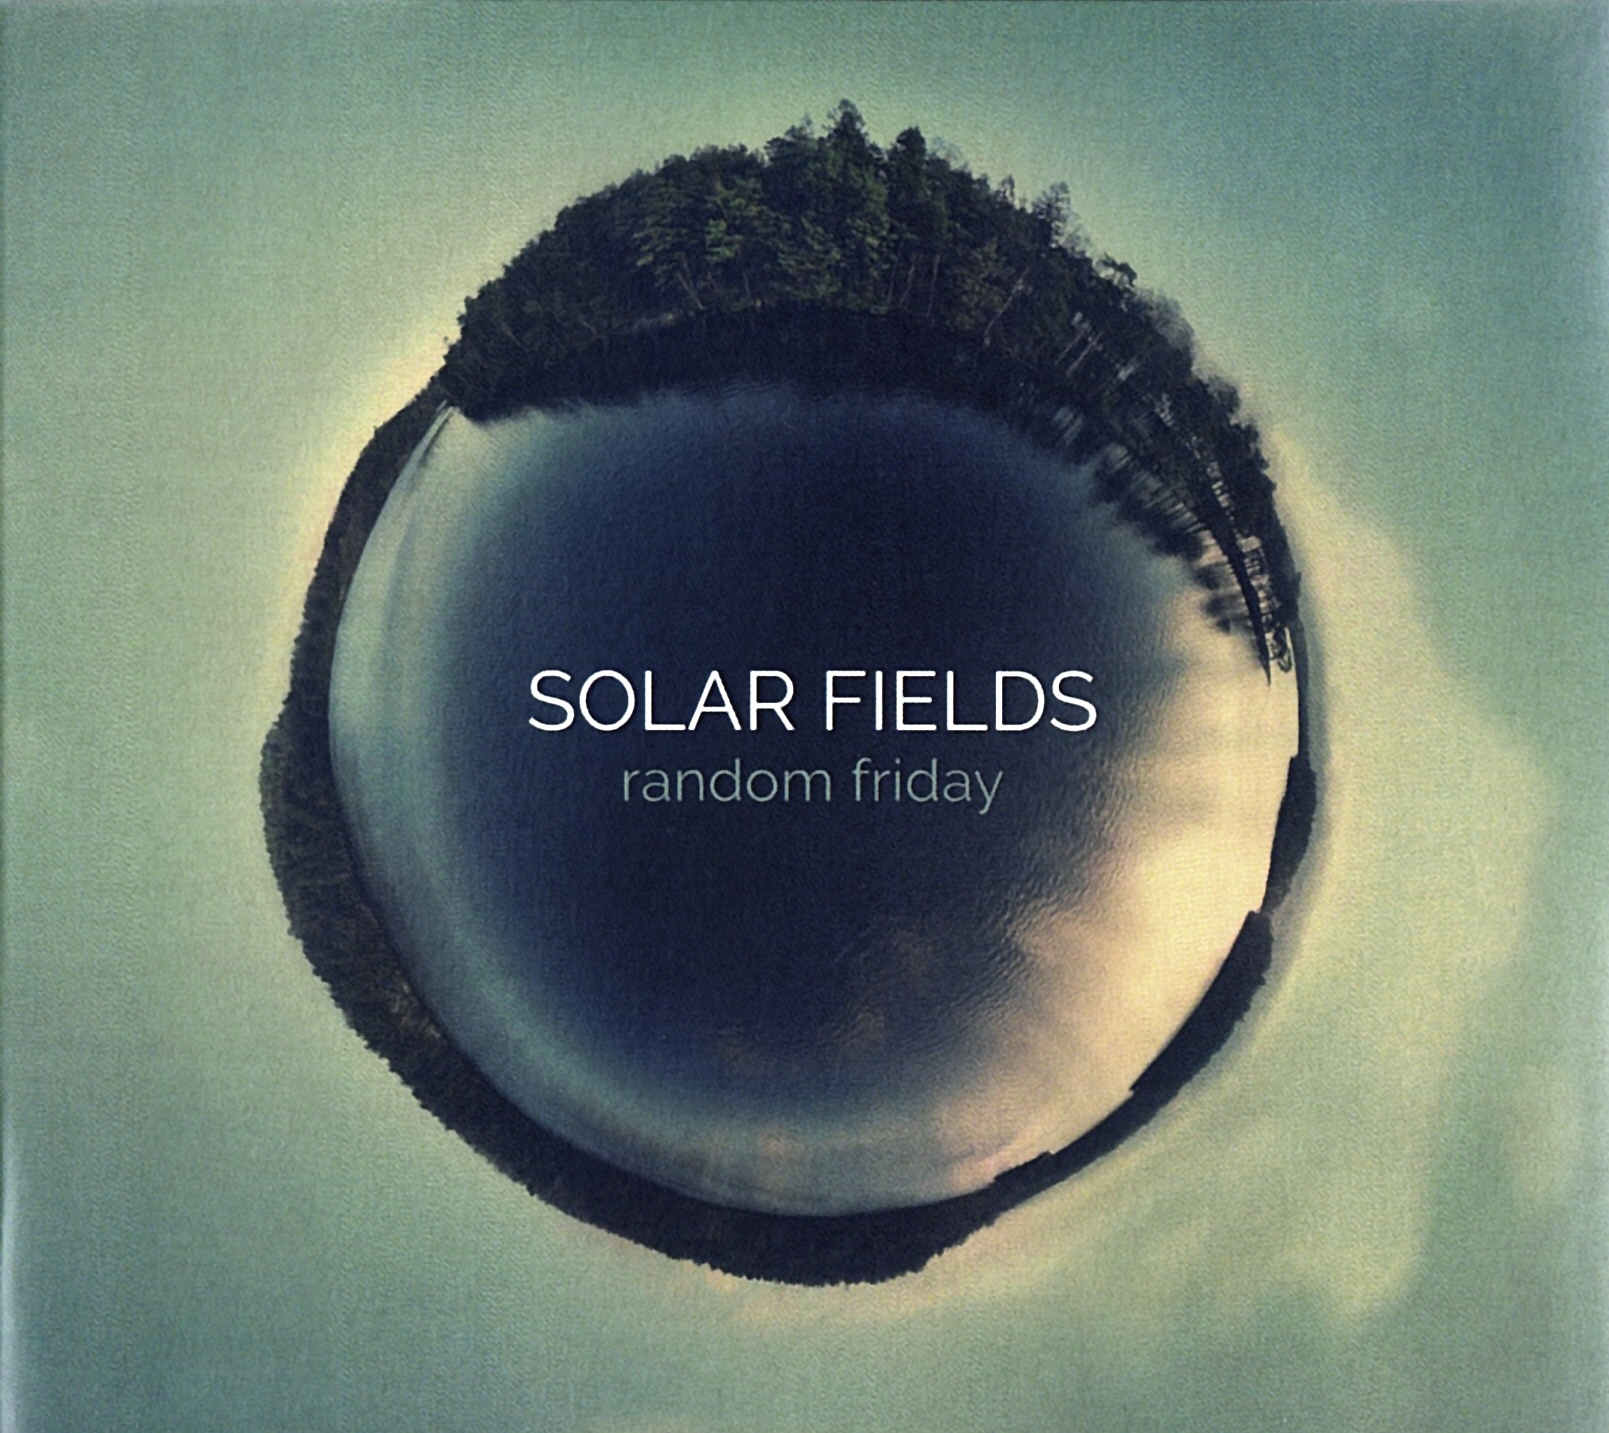 Solar Fields - random friday